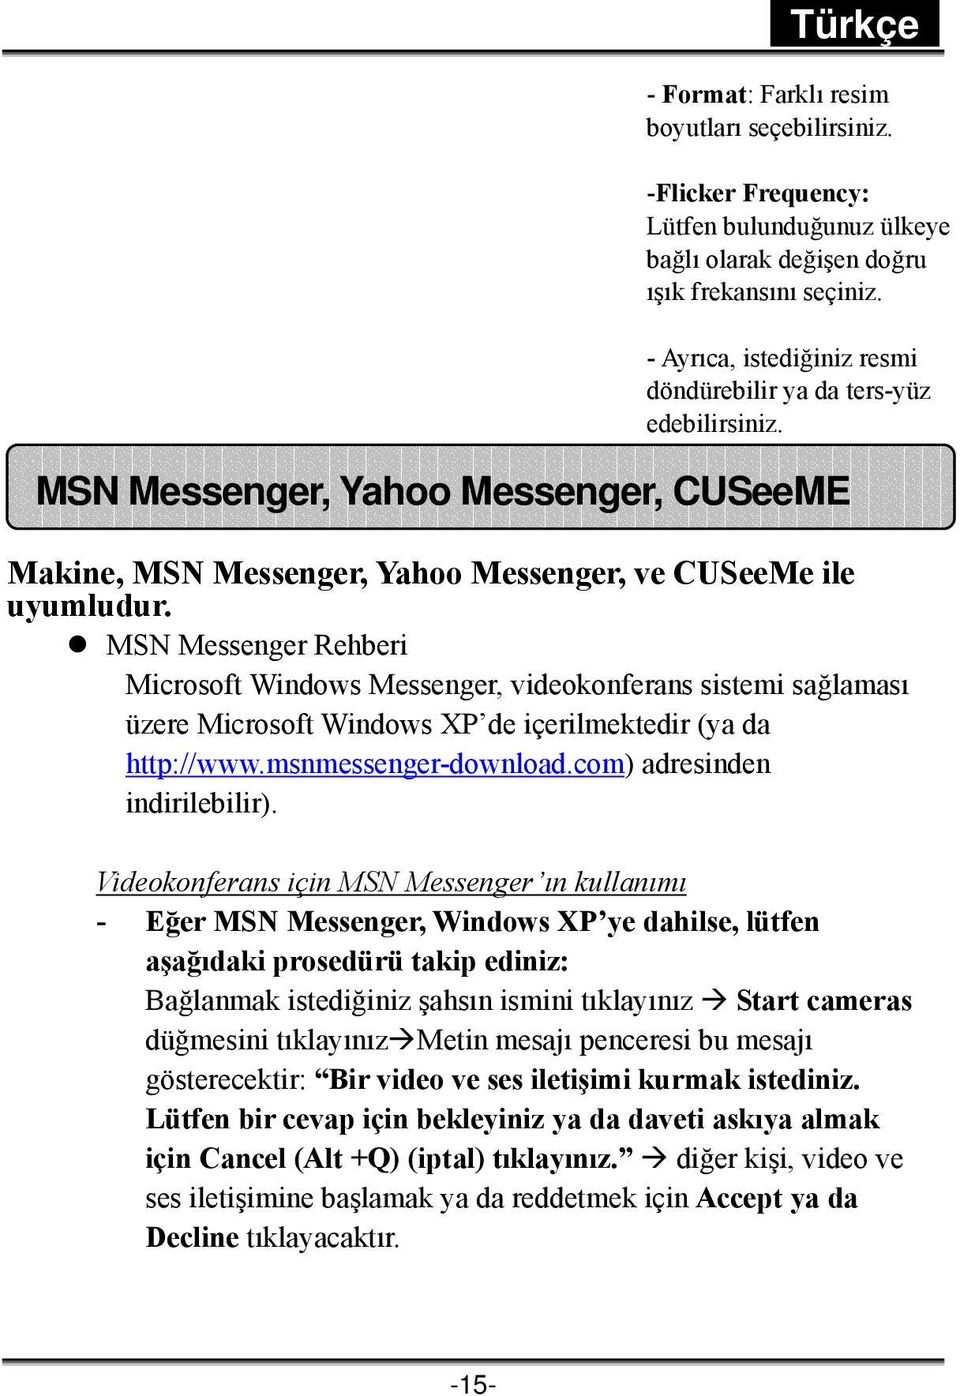 MSN Messenger Rehberi Microsoft Windows Messenger, videokonferans sistemi sağlaması üzere Microsoft Windows XP de içerilmektedir (ya da http://www.msnmessenger-download.com) adresinden indirilebilir).